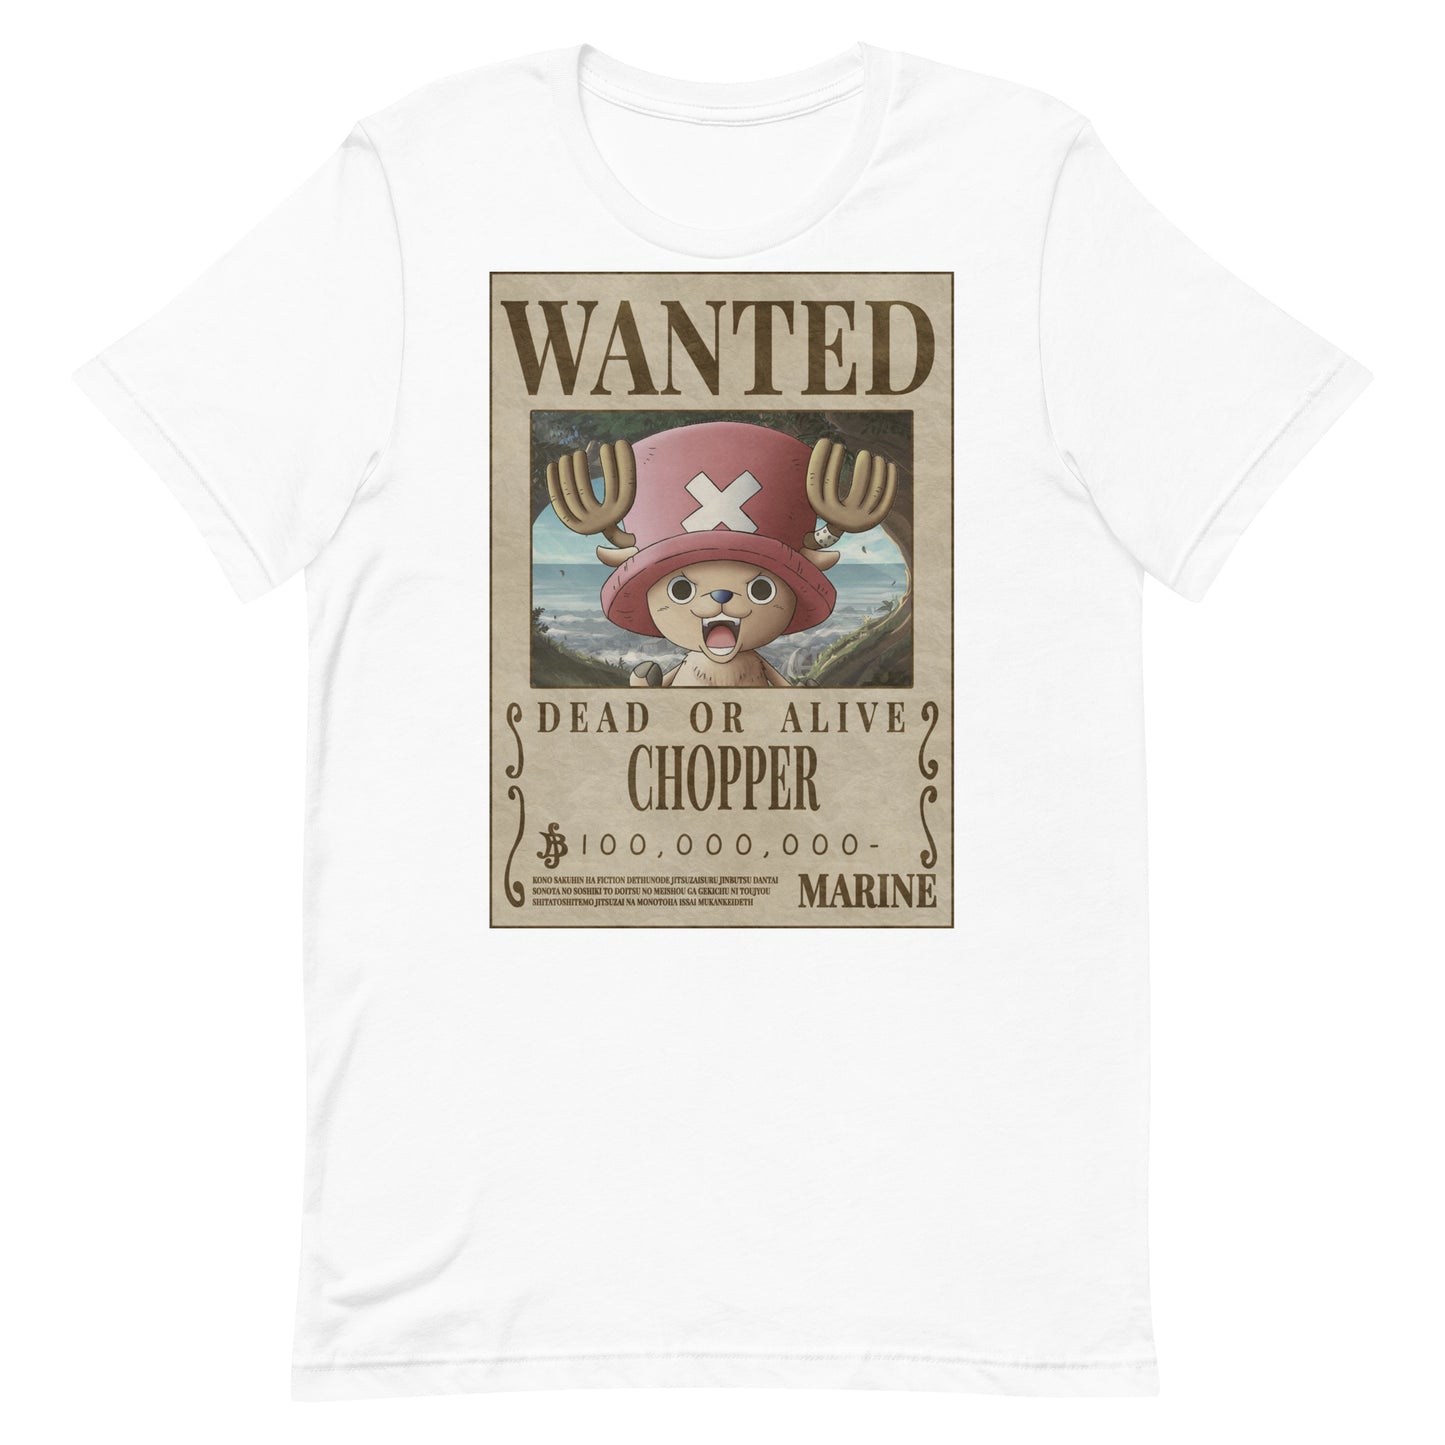 Chopper Wanted Poster T Shirt